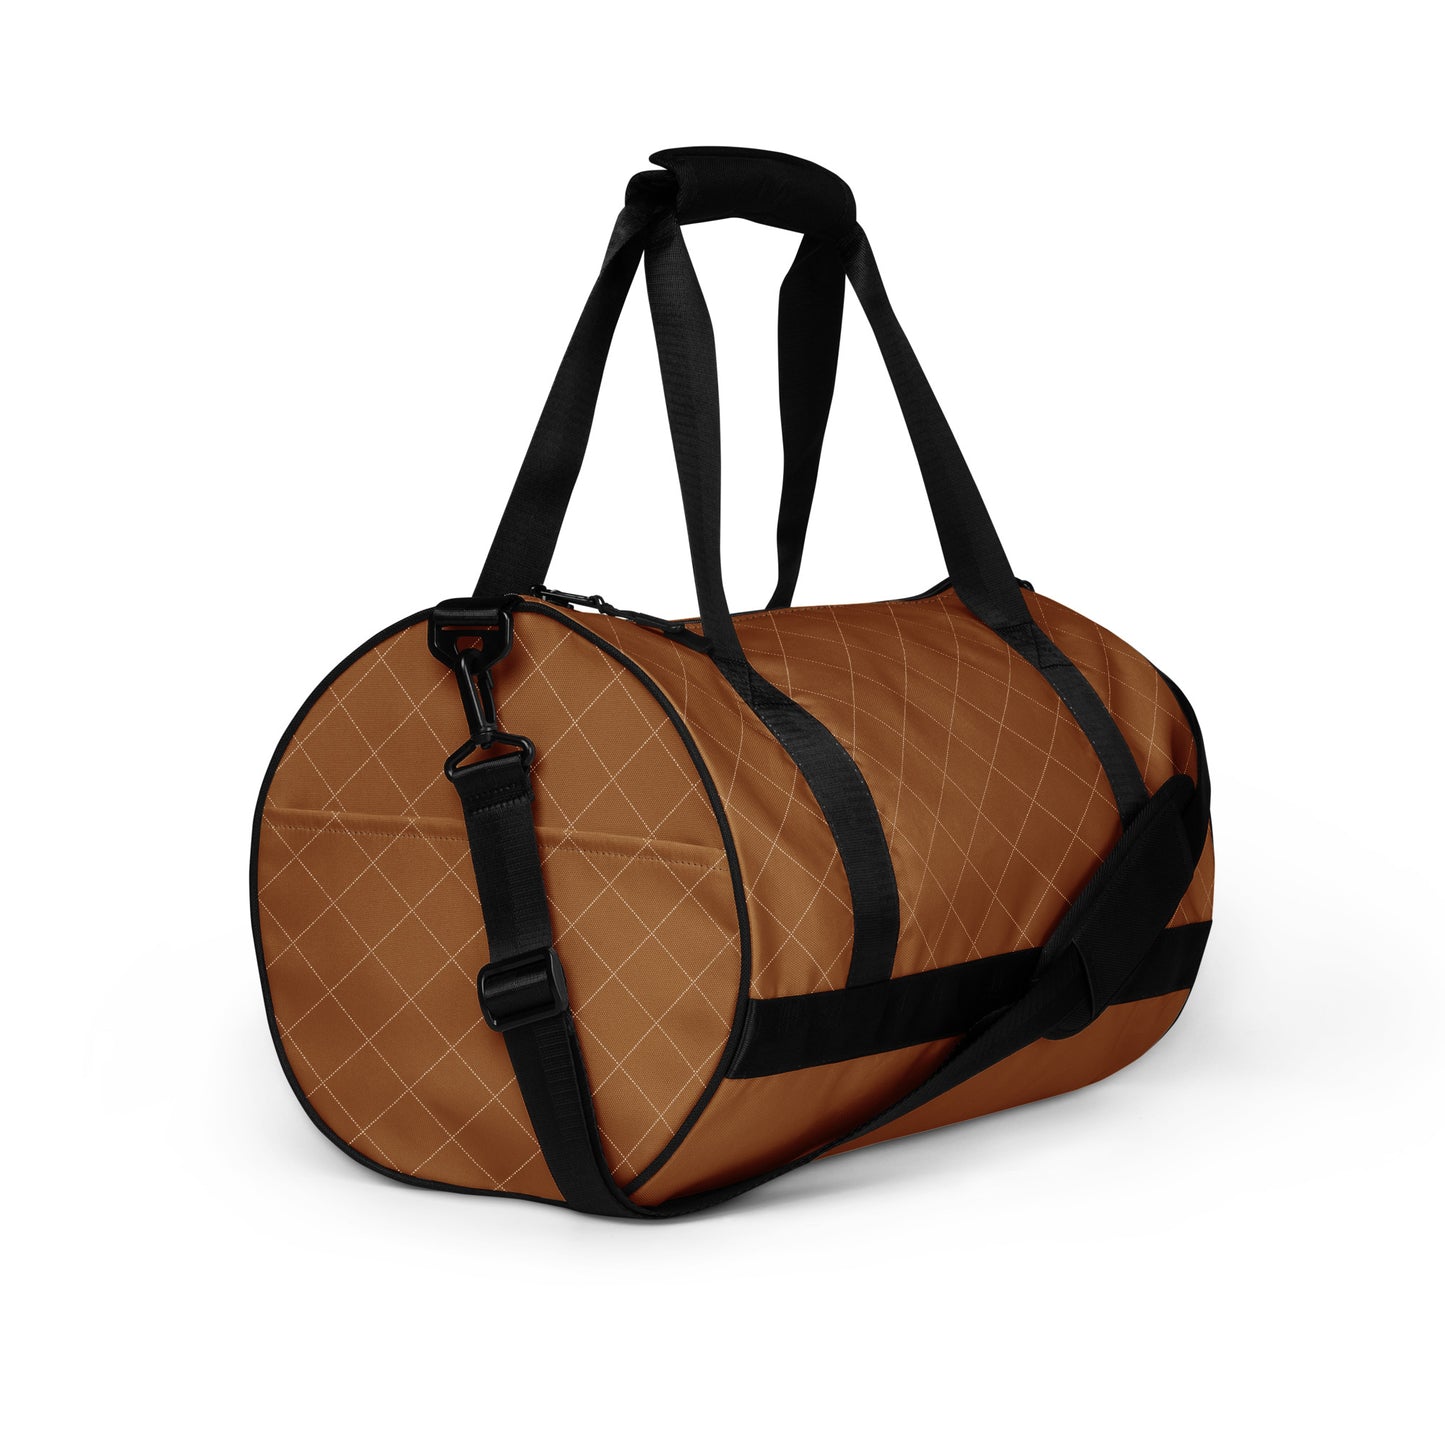 Caramel - Sustainably Made Gym Bag